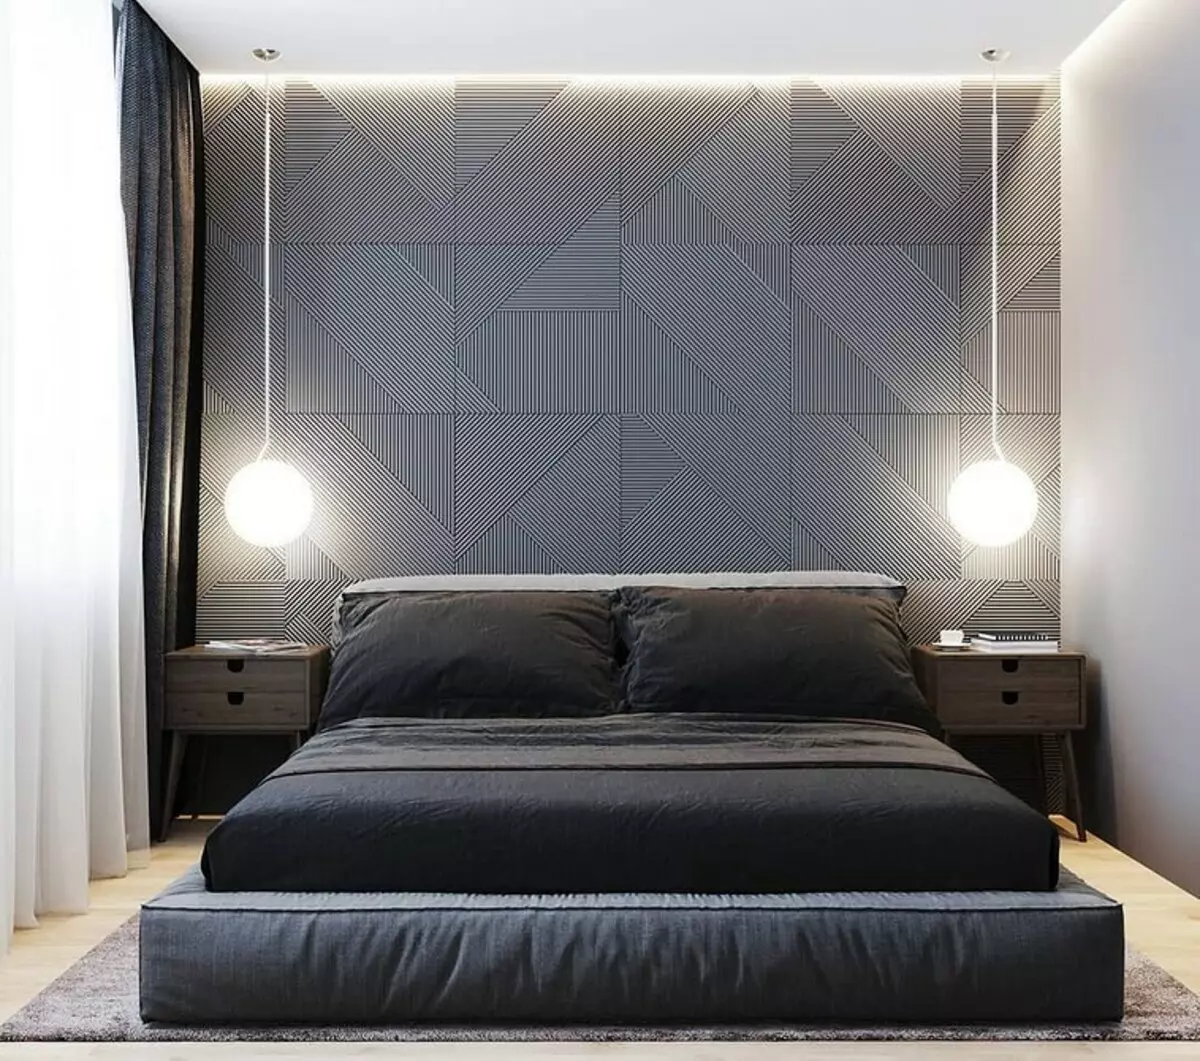 6 Најбоља решења у боји за мало спаваће собе 8055_197